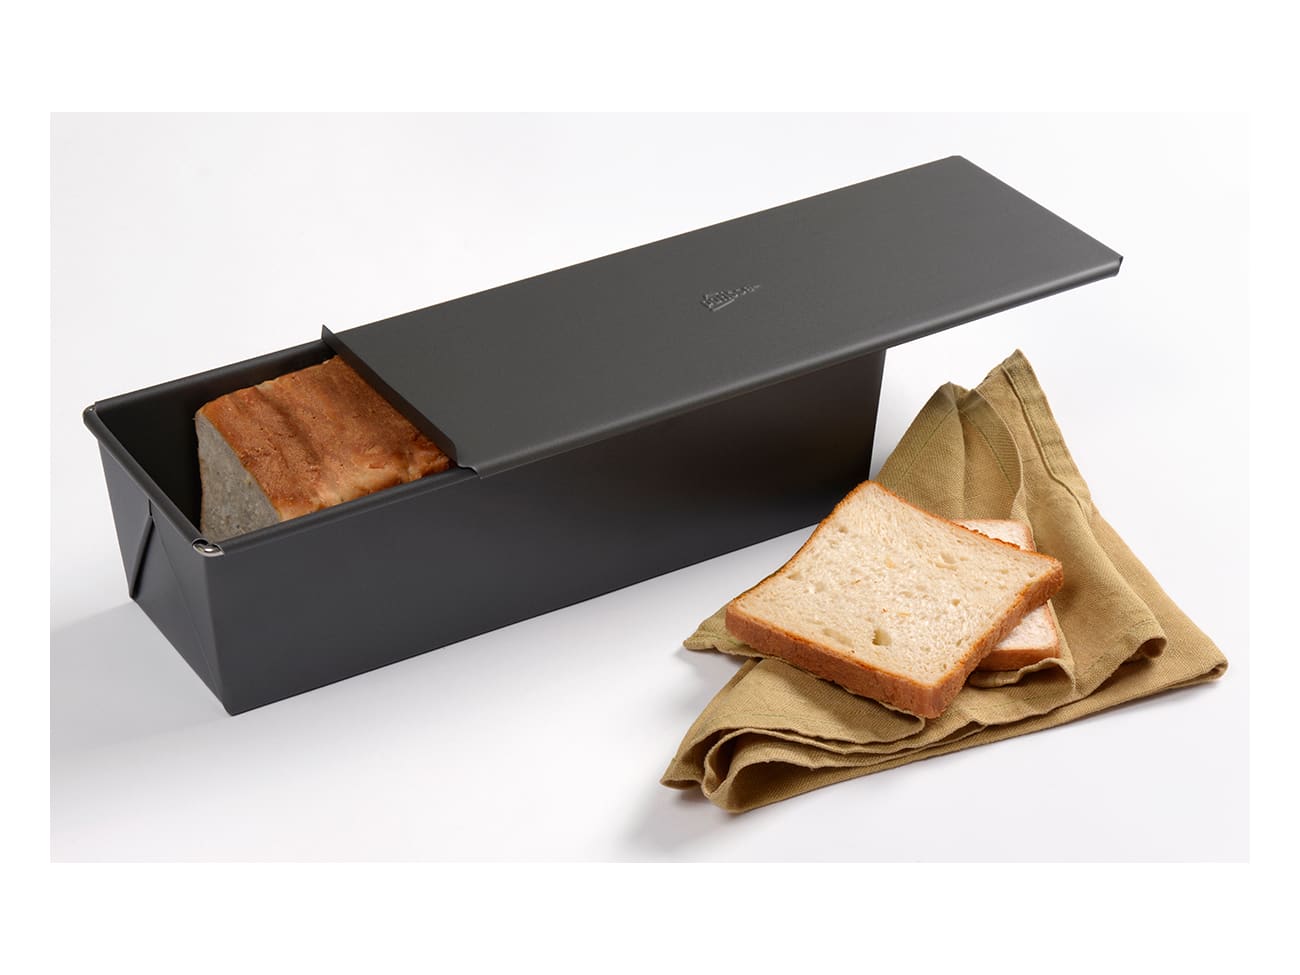 Moule à pain complet anti-adhésif, la batterie de cuisine pour boulangerie  COLIS DE 1 Designation Moule à pain complet anti-adhésif d'une longueur de  14 cm x 8 cm et de 8 cm